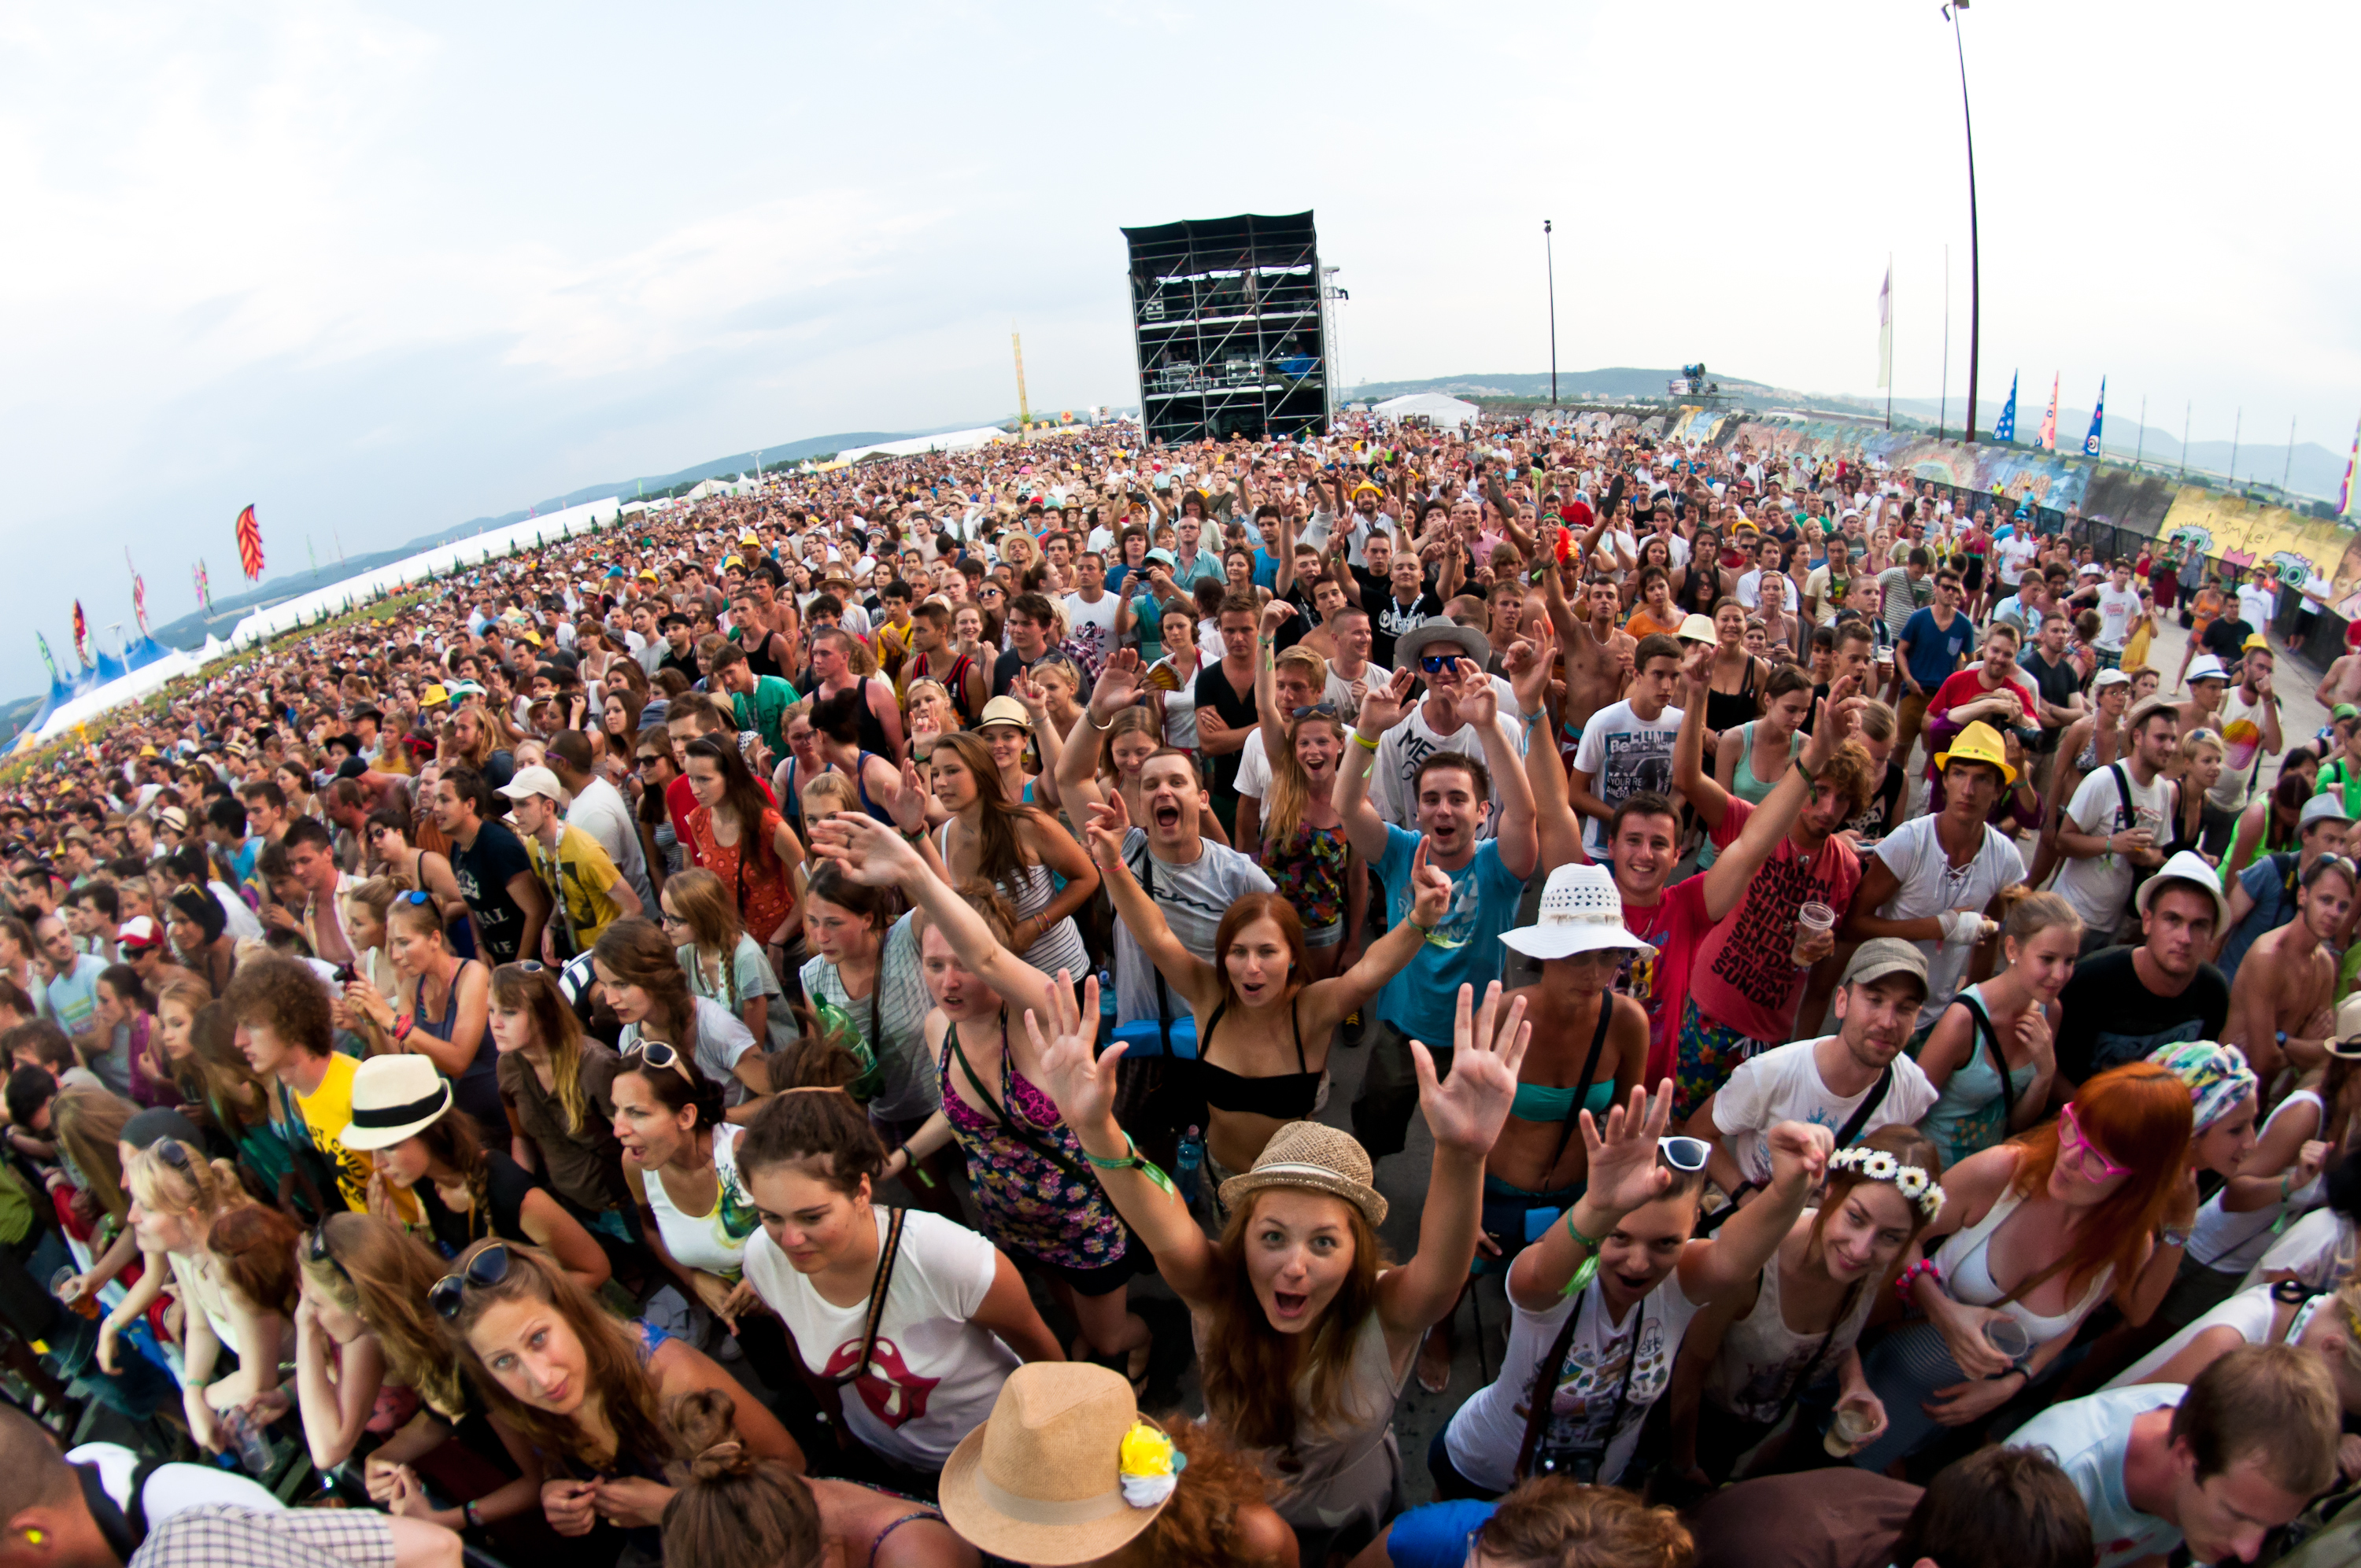 Много людей на концерте. Толпа на концерте. Люди на концерте. Много народу на концерте. Летний музыкальный фестиваль.